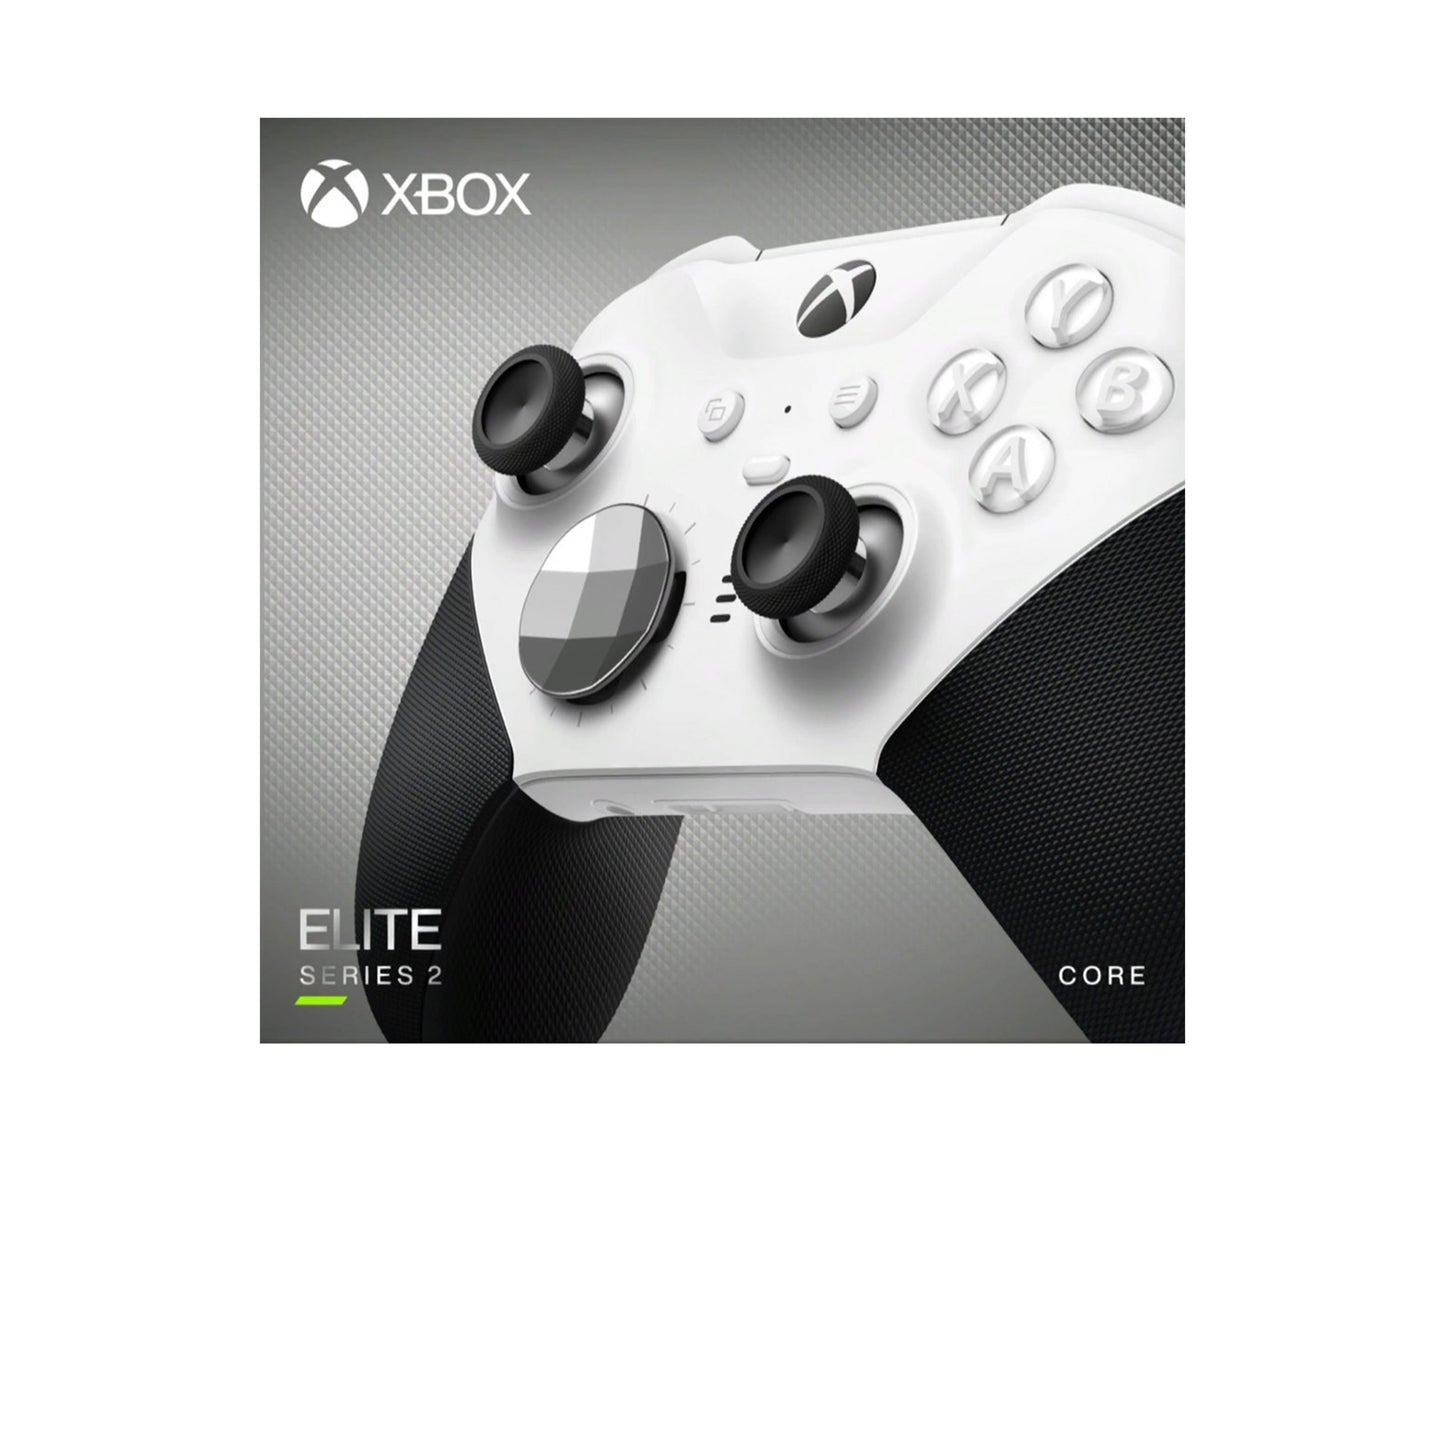 مايكروسوفت - وحدة التحكم اللاسلكية Elite Series 2 Core لأجهزة Xbox Series X وXbox Series S وXbox One وأجهزة الكمبيوتر التي تعمل بنظام Windows - أزرق 